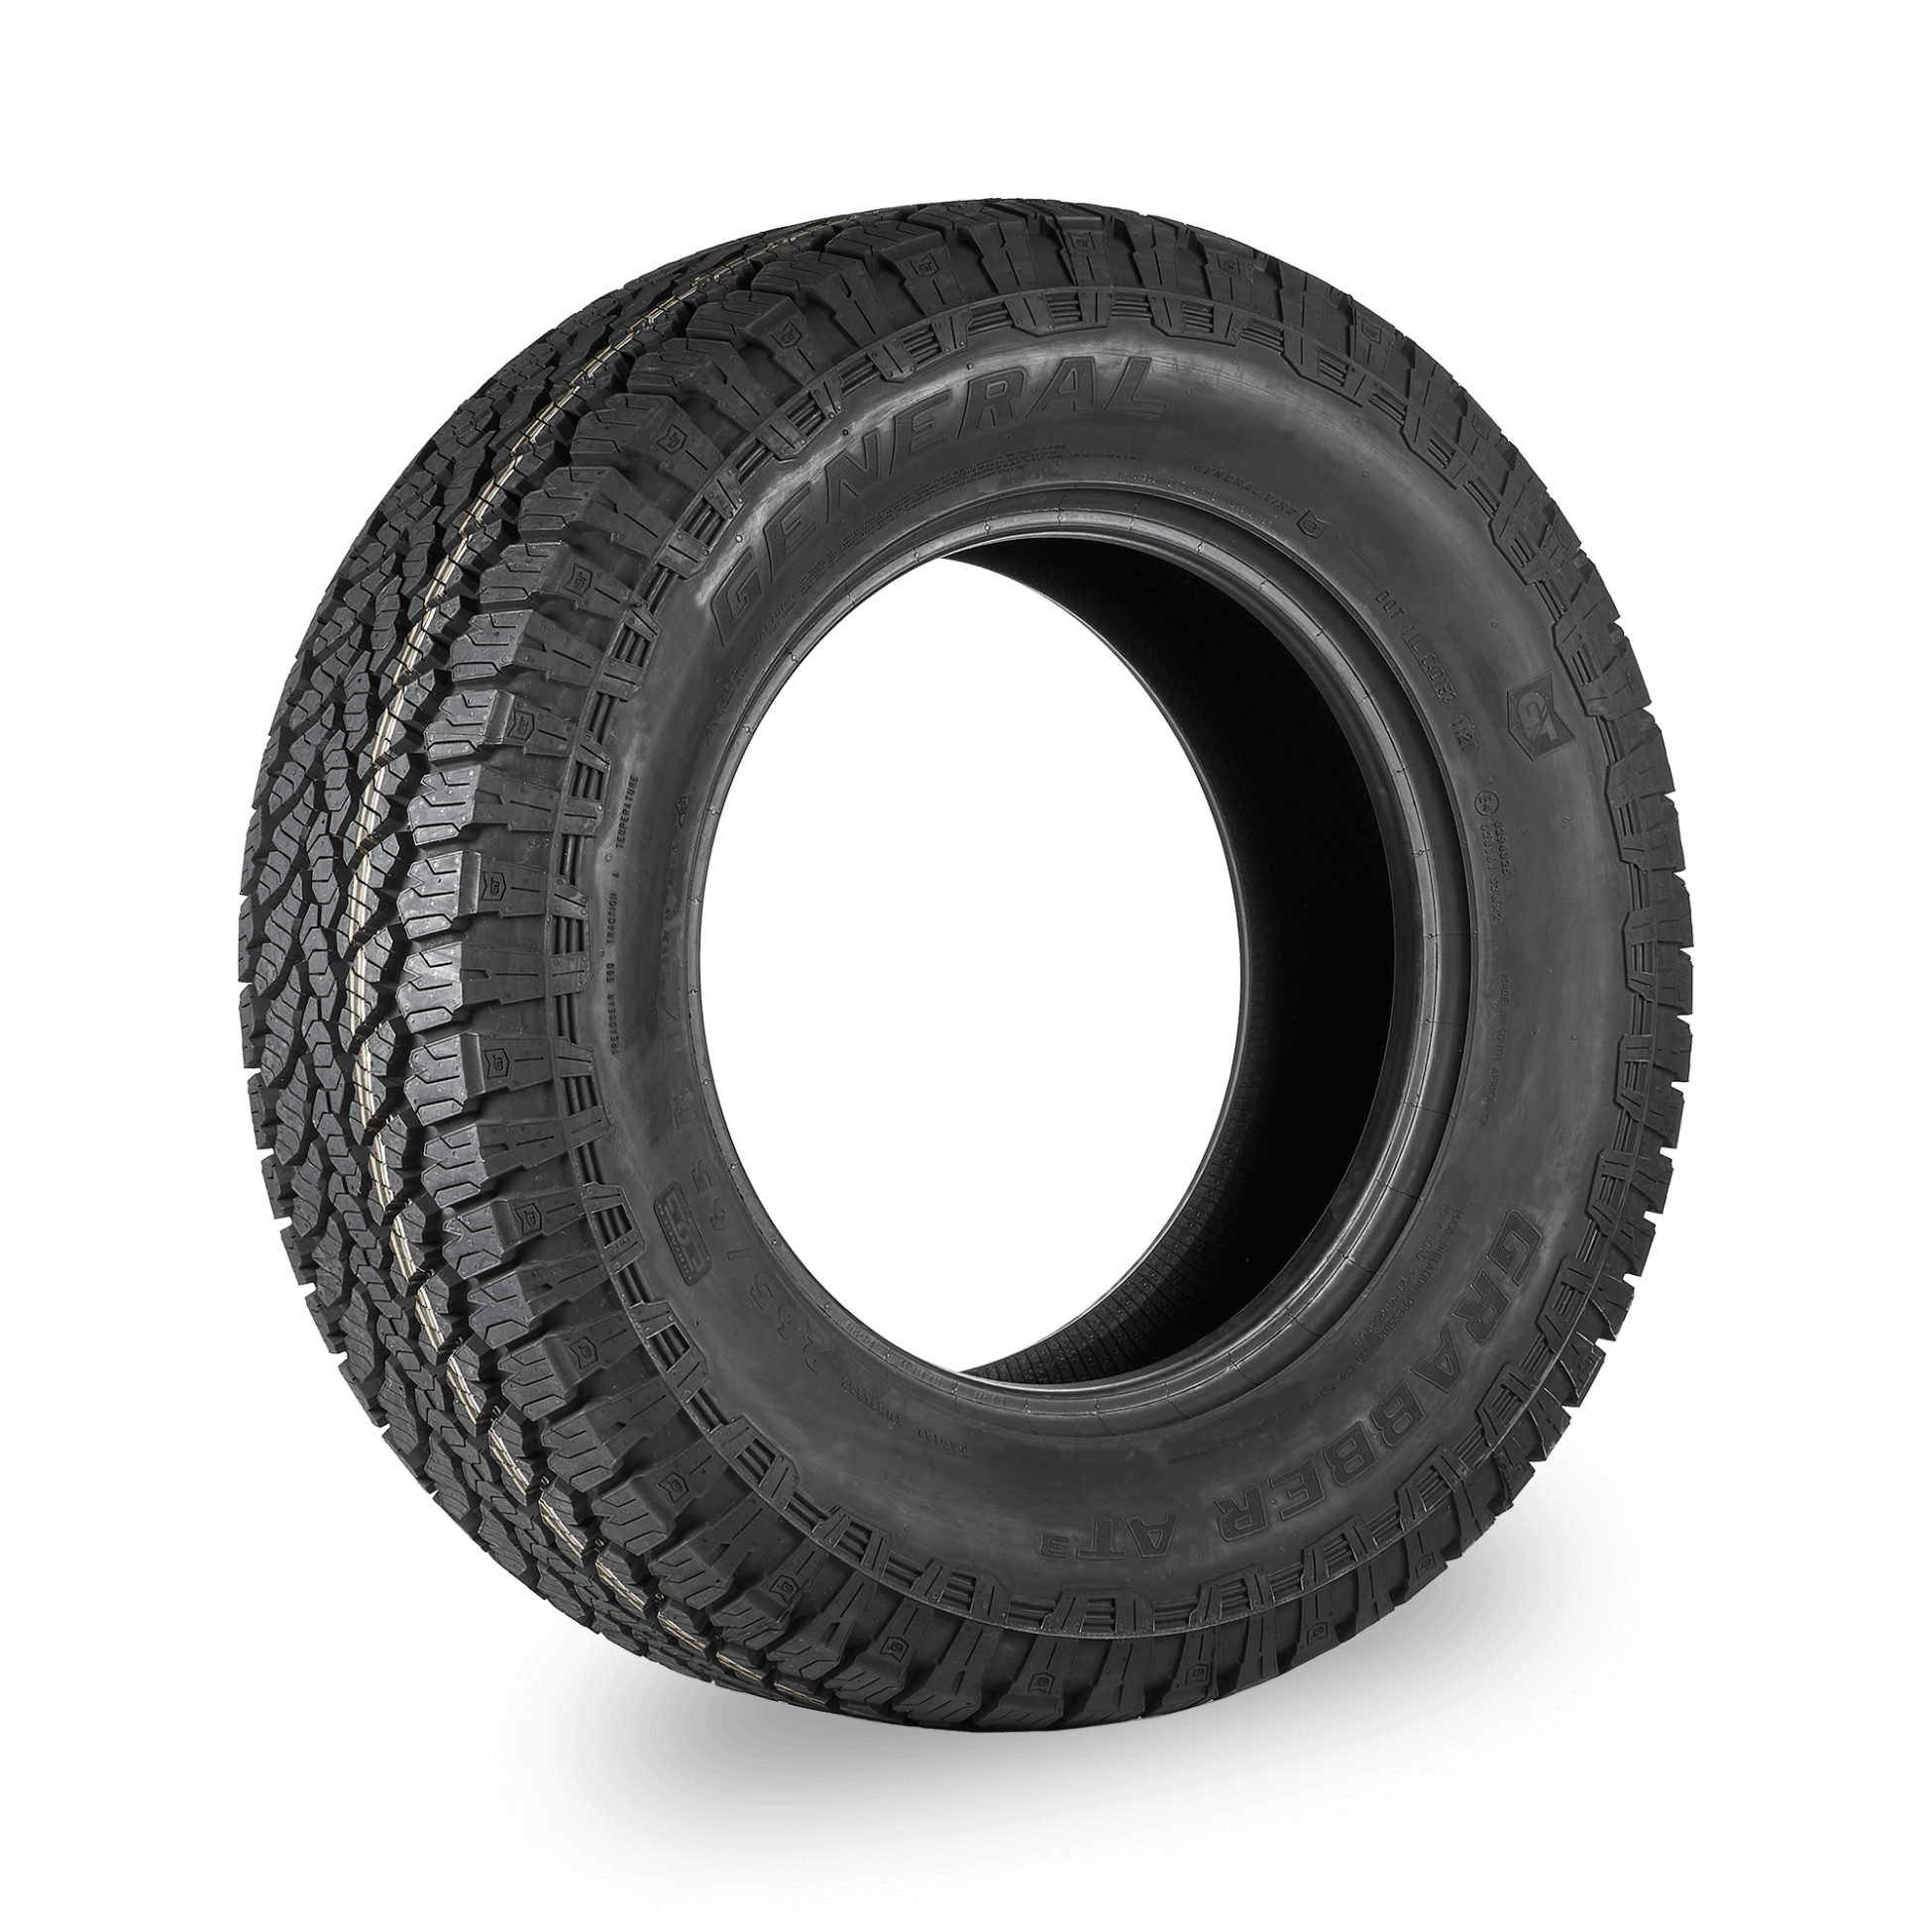 General Tire Grabber AT3 215/60 R17 96H au meilleur prix sur